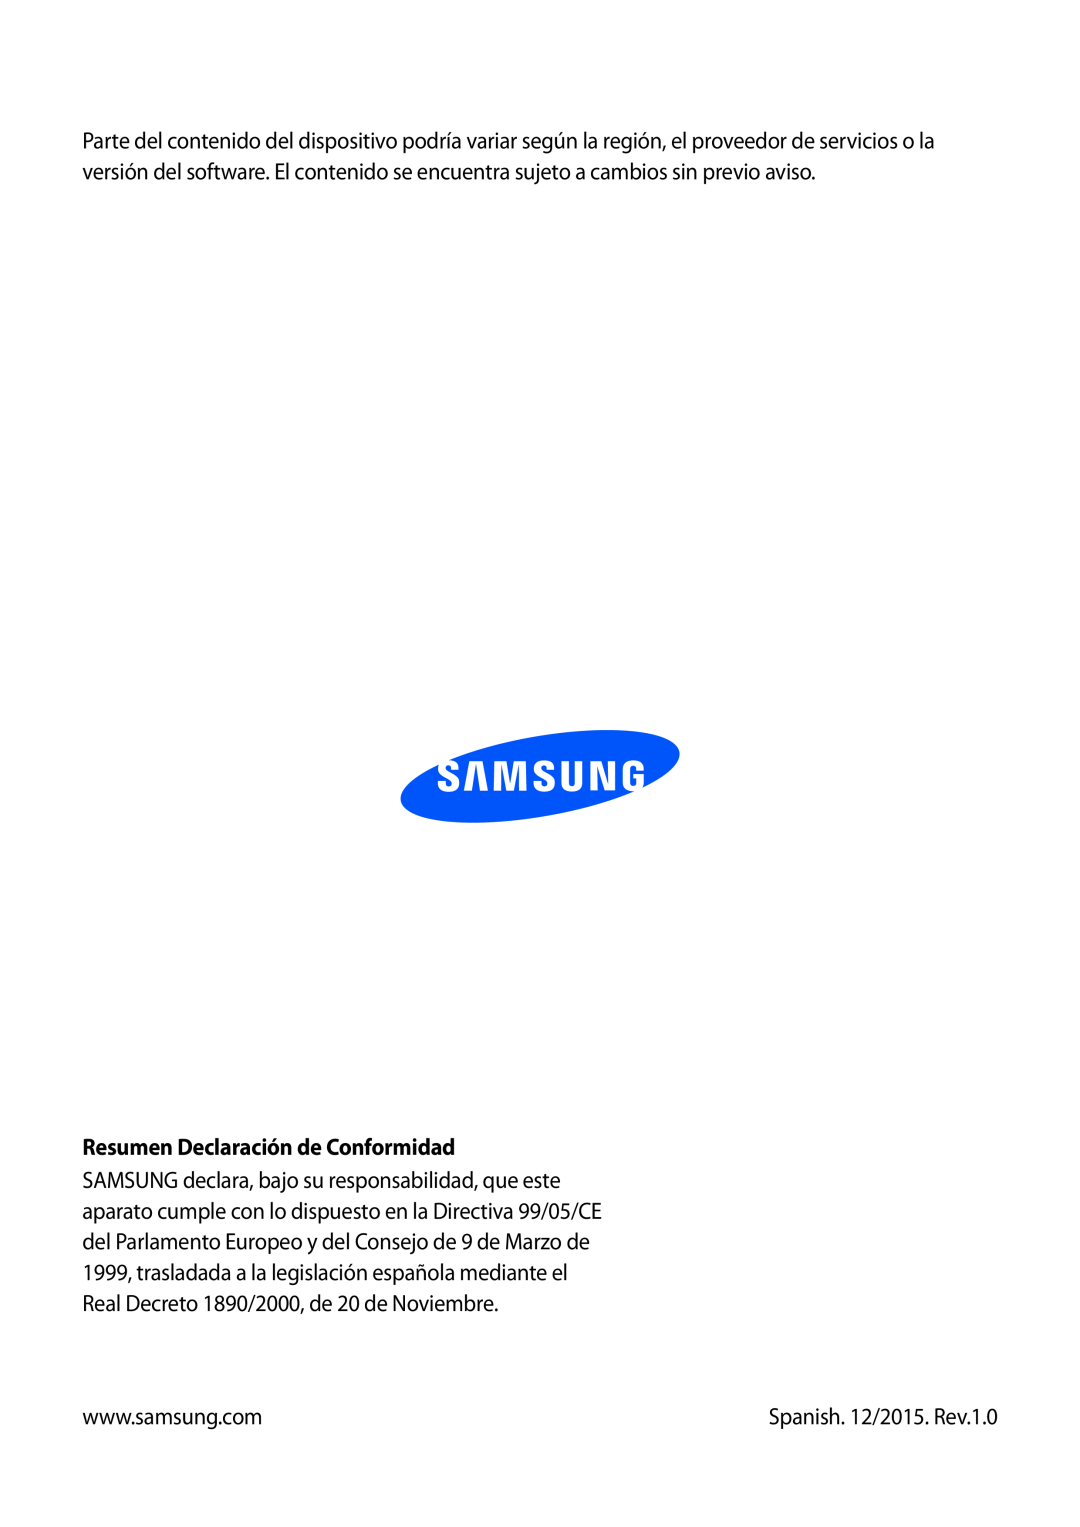 Samsung SM-T3150ZWAATL manual Resumen Declaración de Conformidad, Spanish. 12/2015. Rev.1.0 